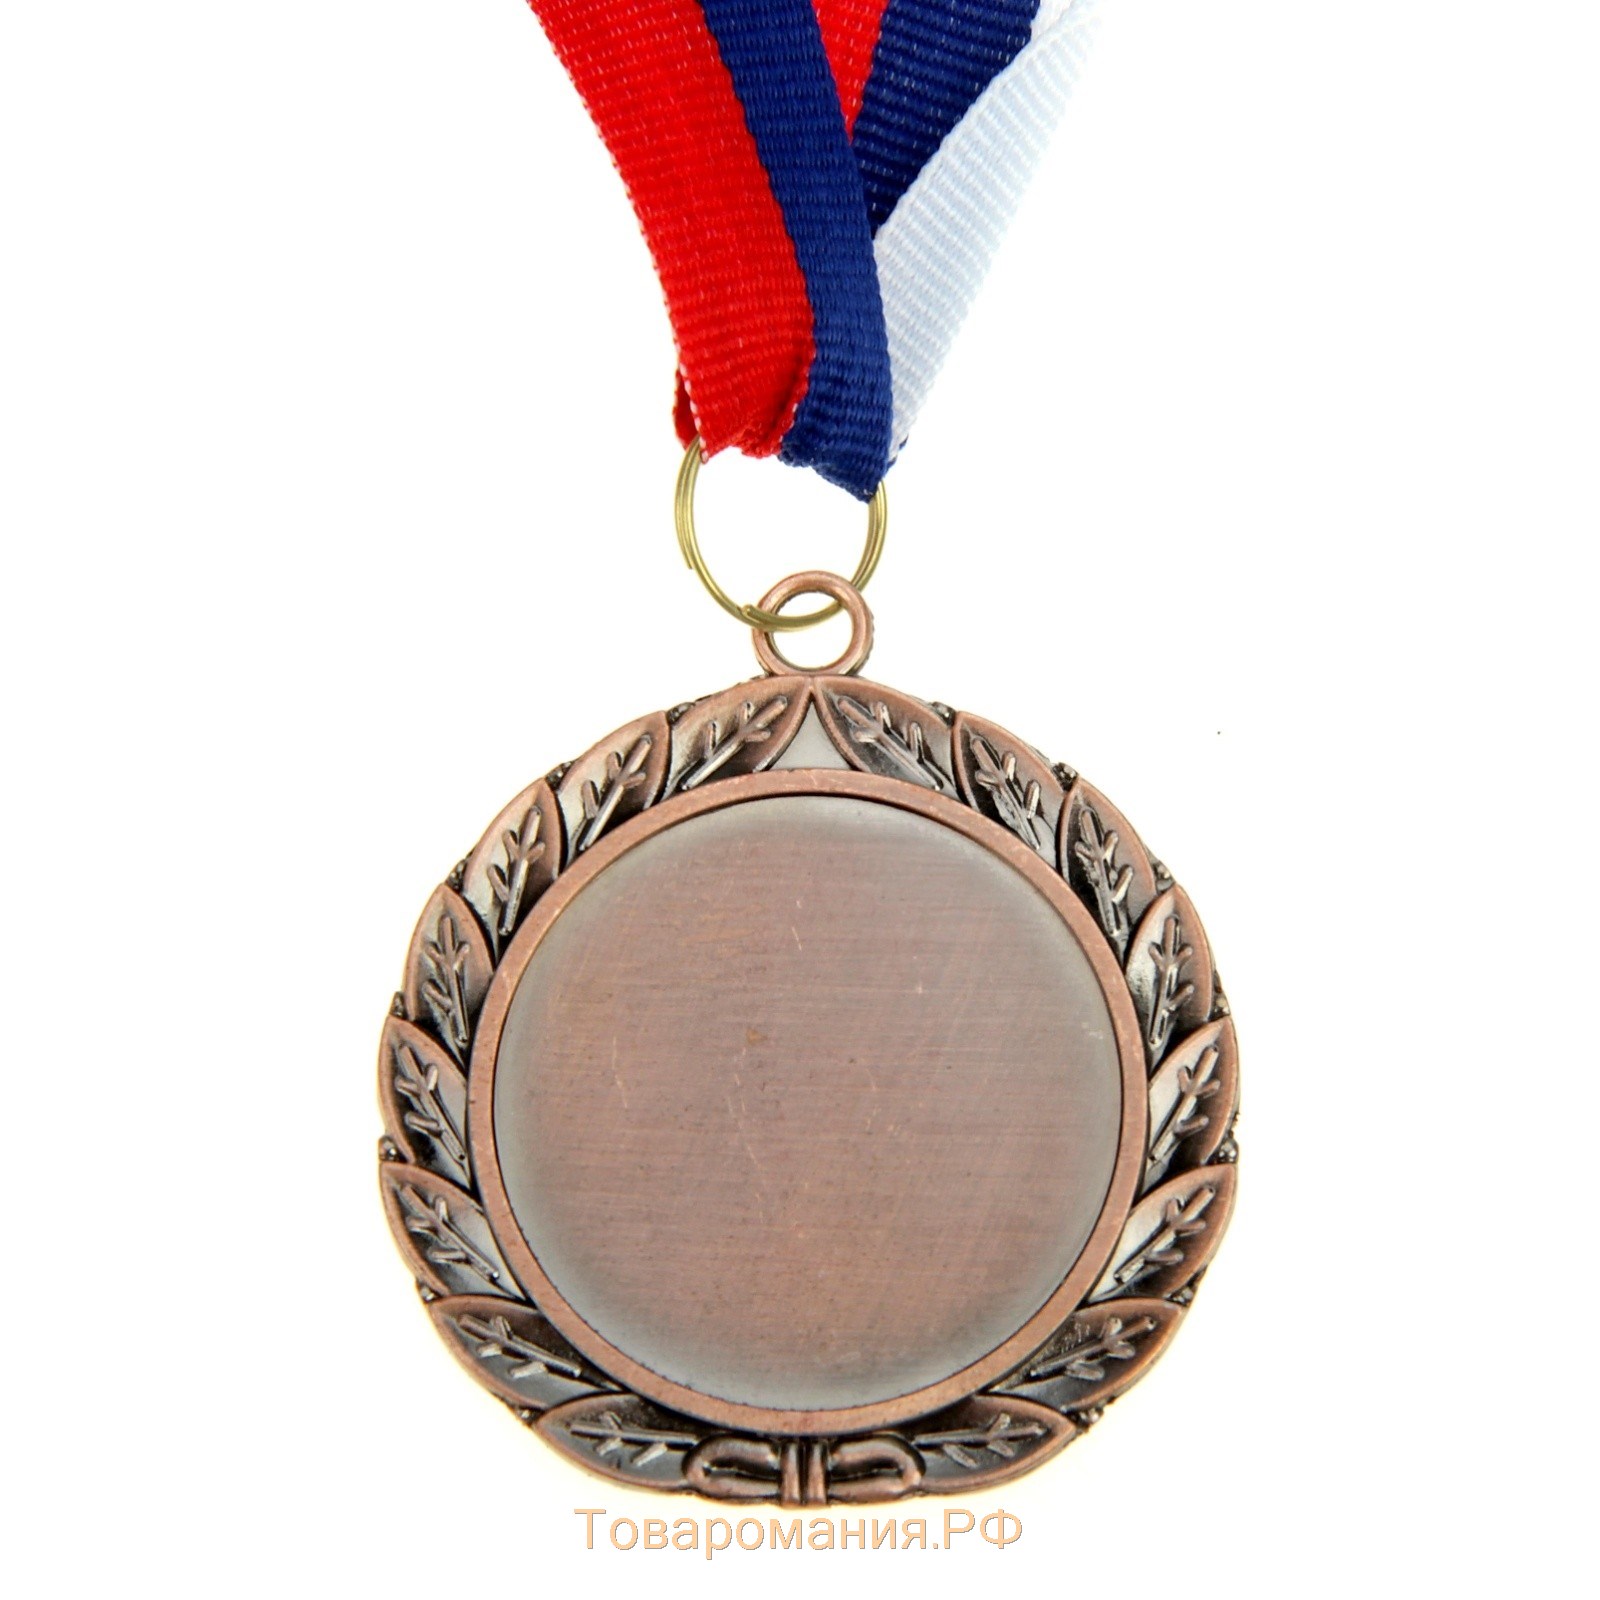 Медаль призовая 001, d= 5 см. 3 место. Цвет бронза. С лентой